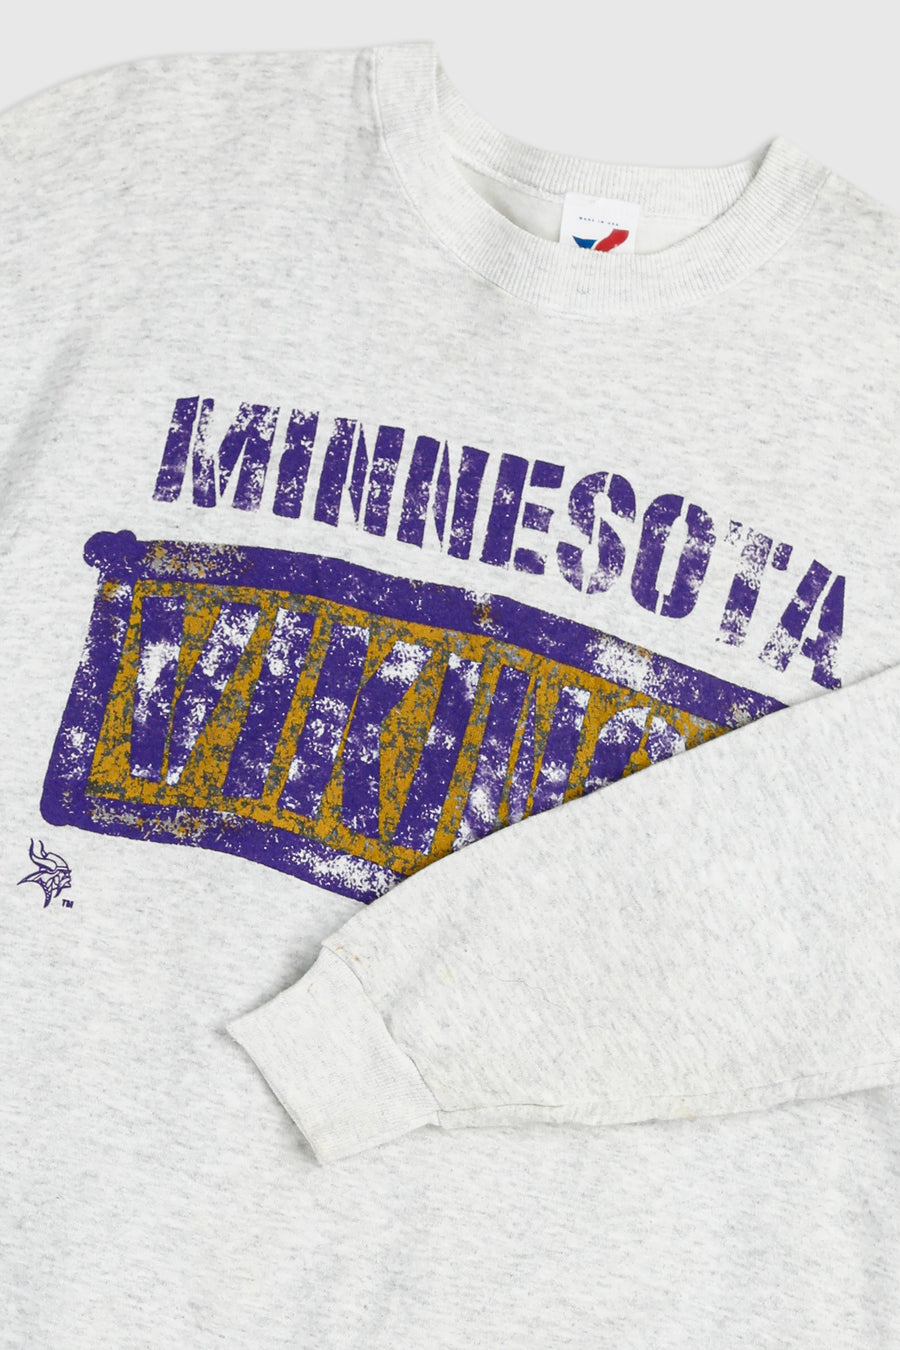 Vintage Minnesota Vikings Sweatshirt - L